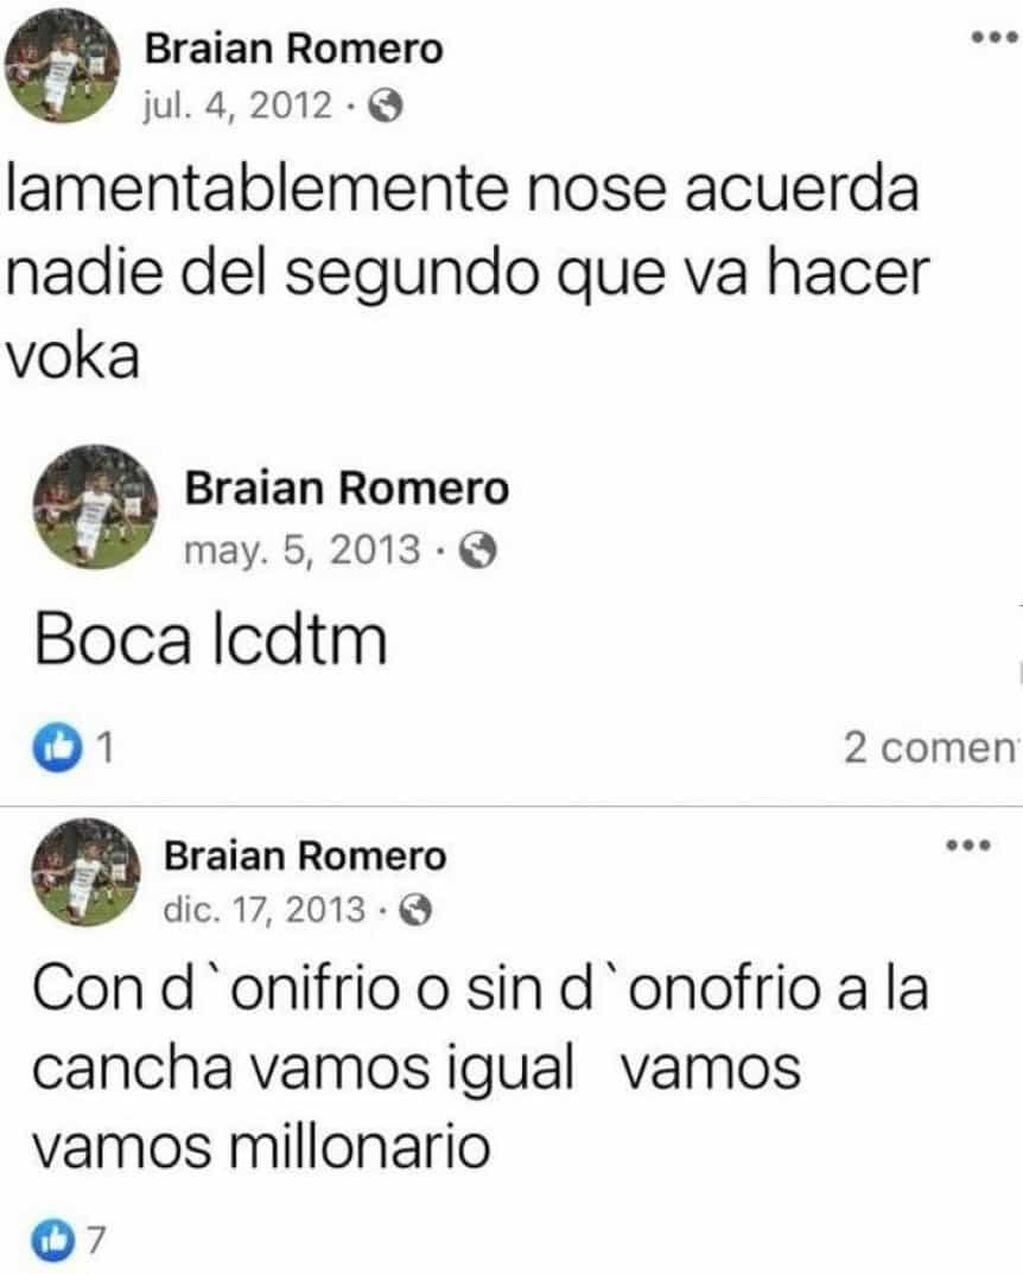 Braian Romero cautivó a los hinchas de River con publicaciones viejas de Facebook.